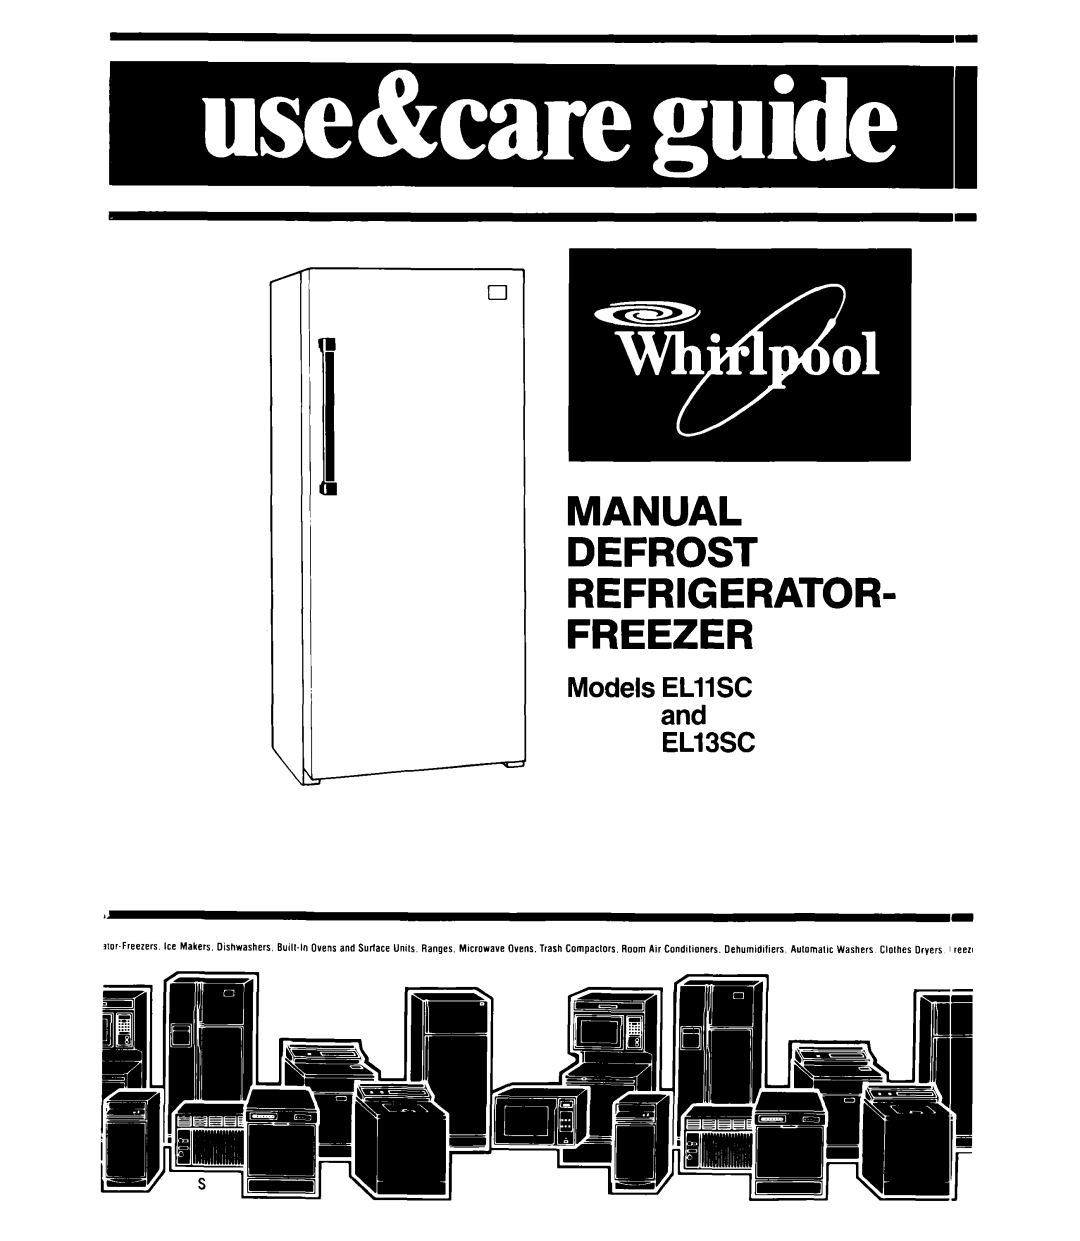 Whirlpool manual Models EL11SC and EL13SC, Manual Defrost Refrigerator Freezer 